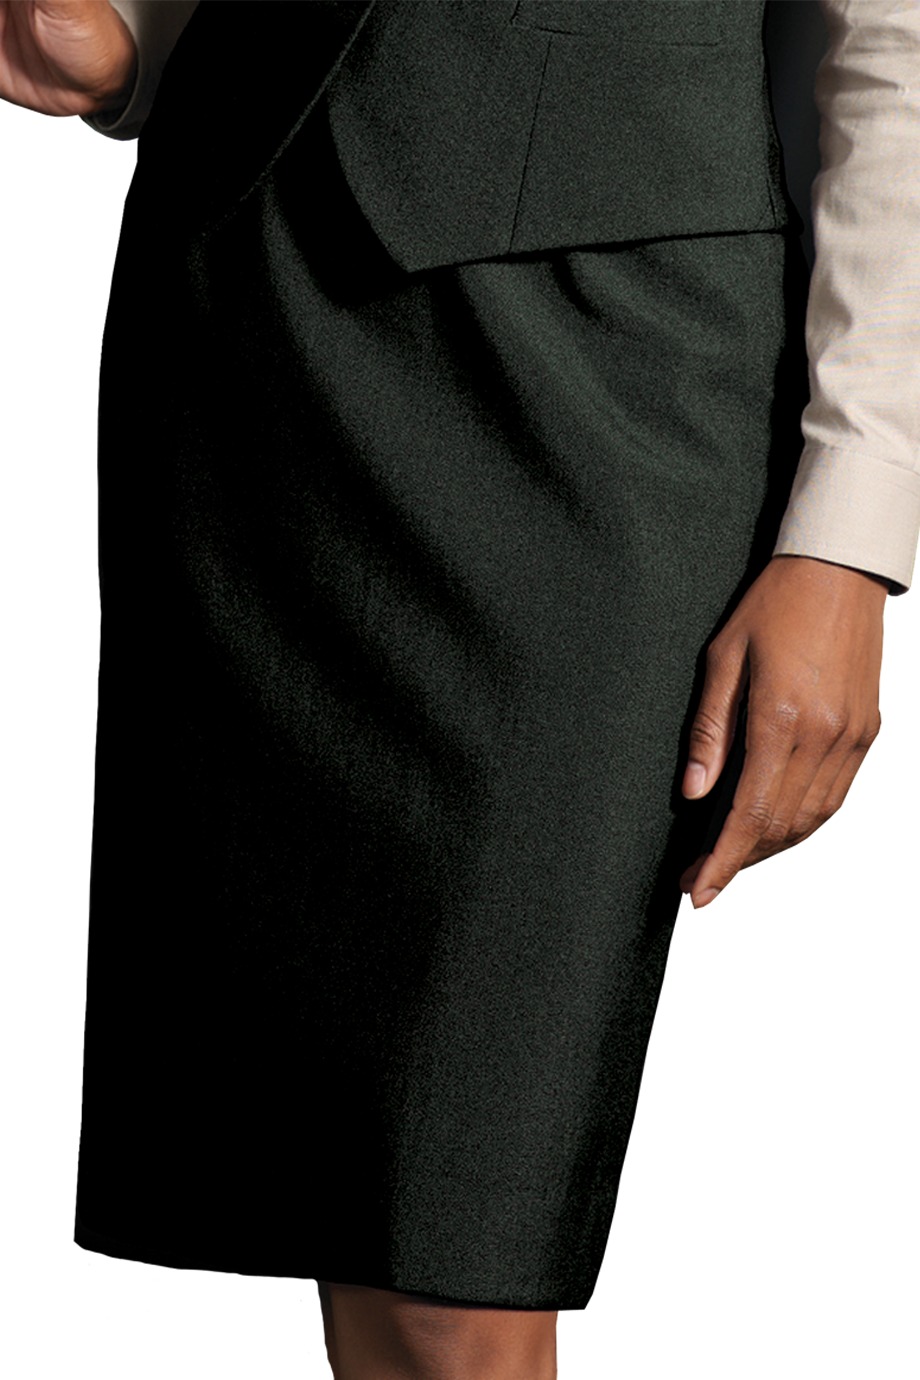 Edwards Garment 9789 - Women's Wool Blend Dress Skirt